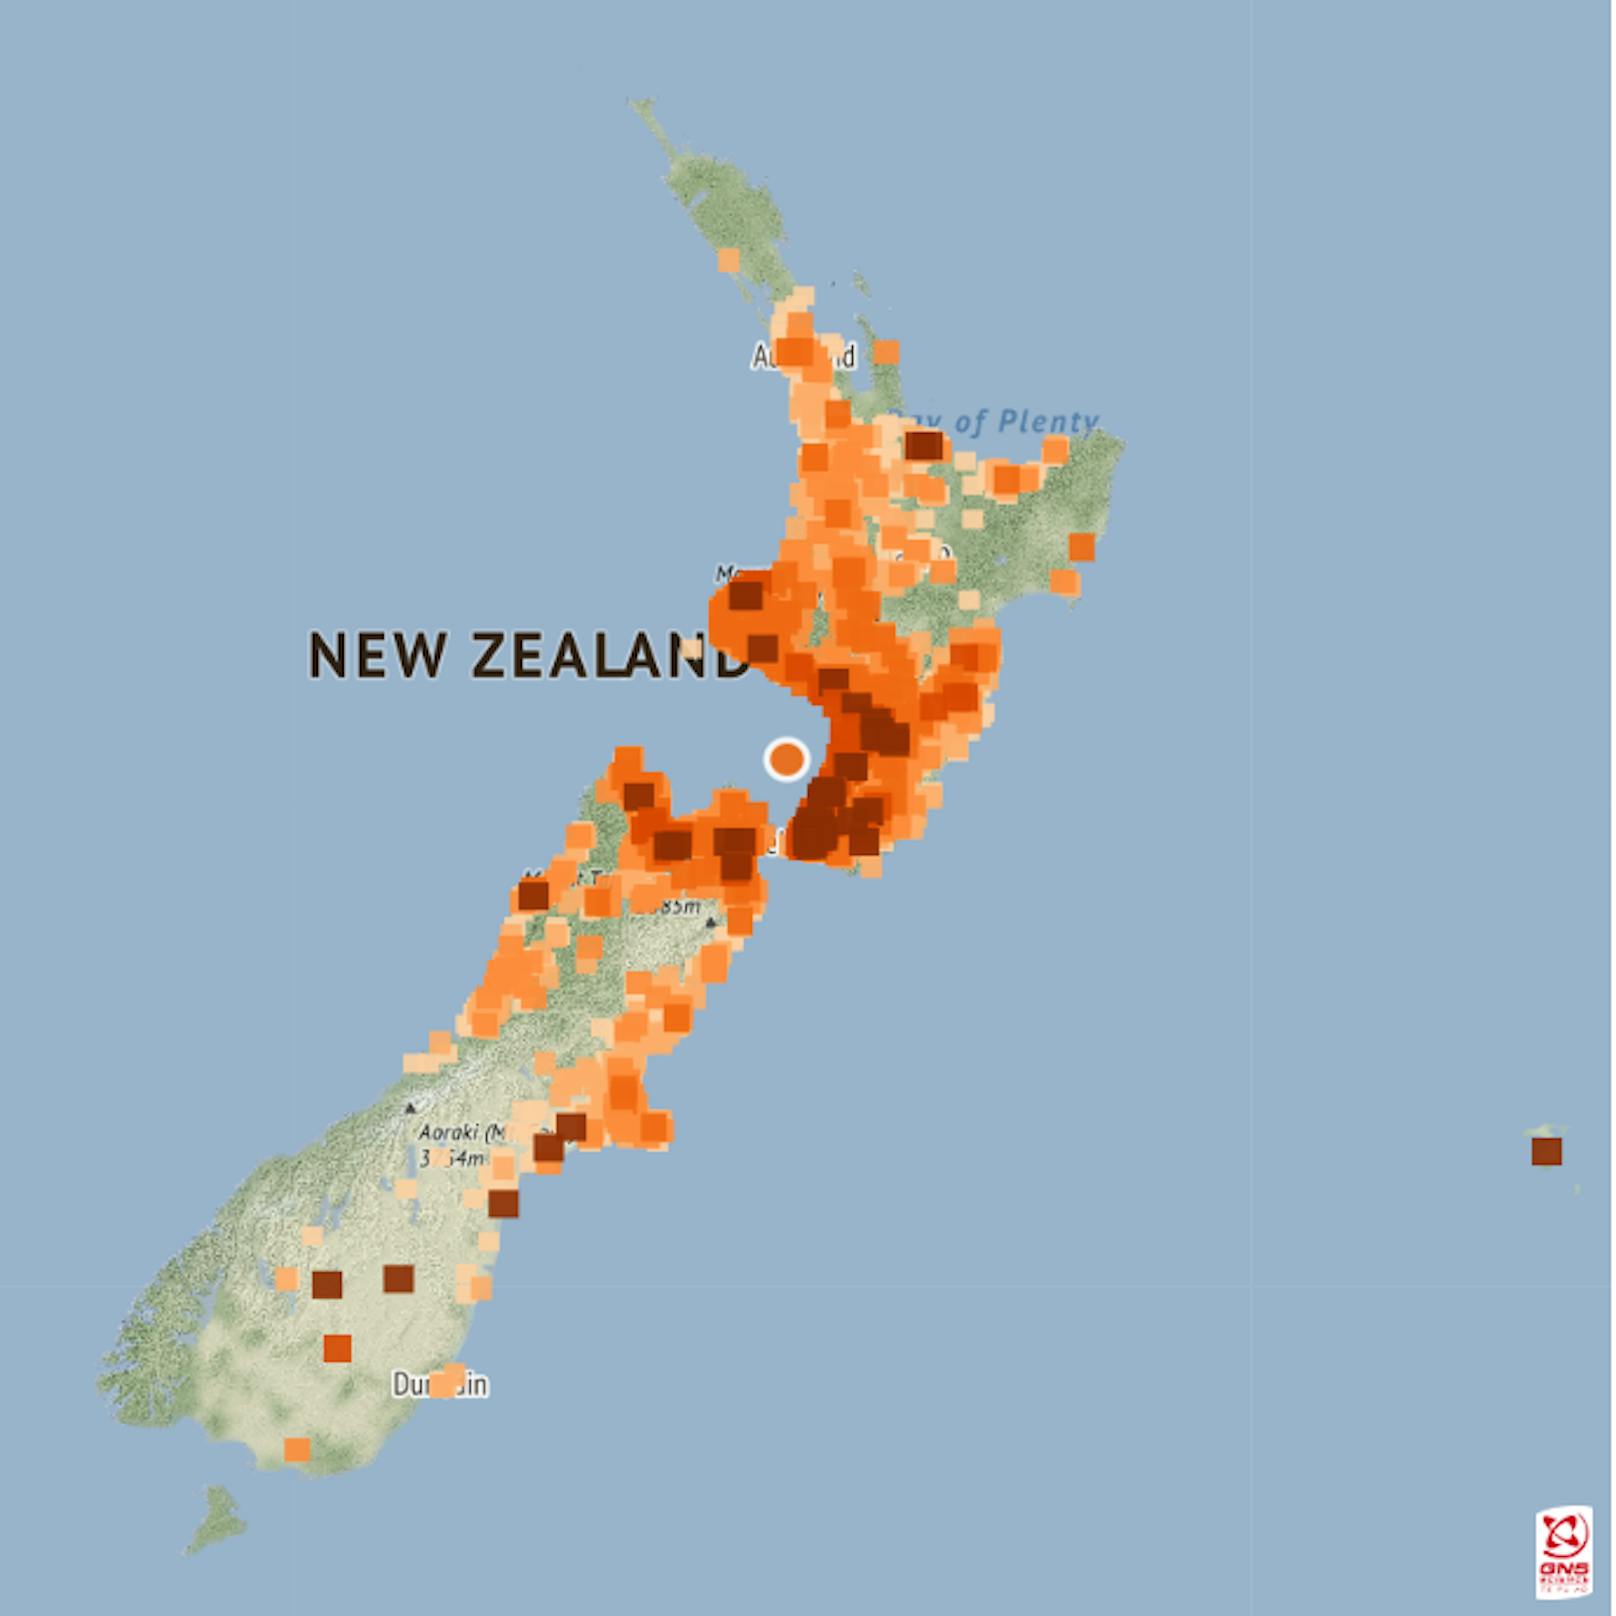 Erdbeben mit der Stärke 6,1 erschüttert Neuseeland